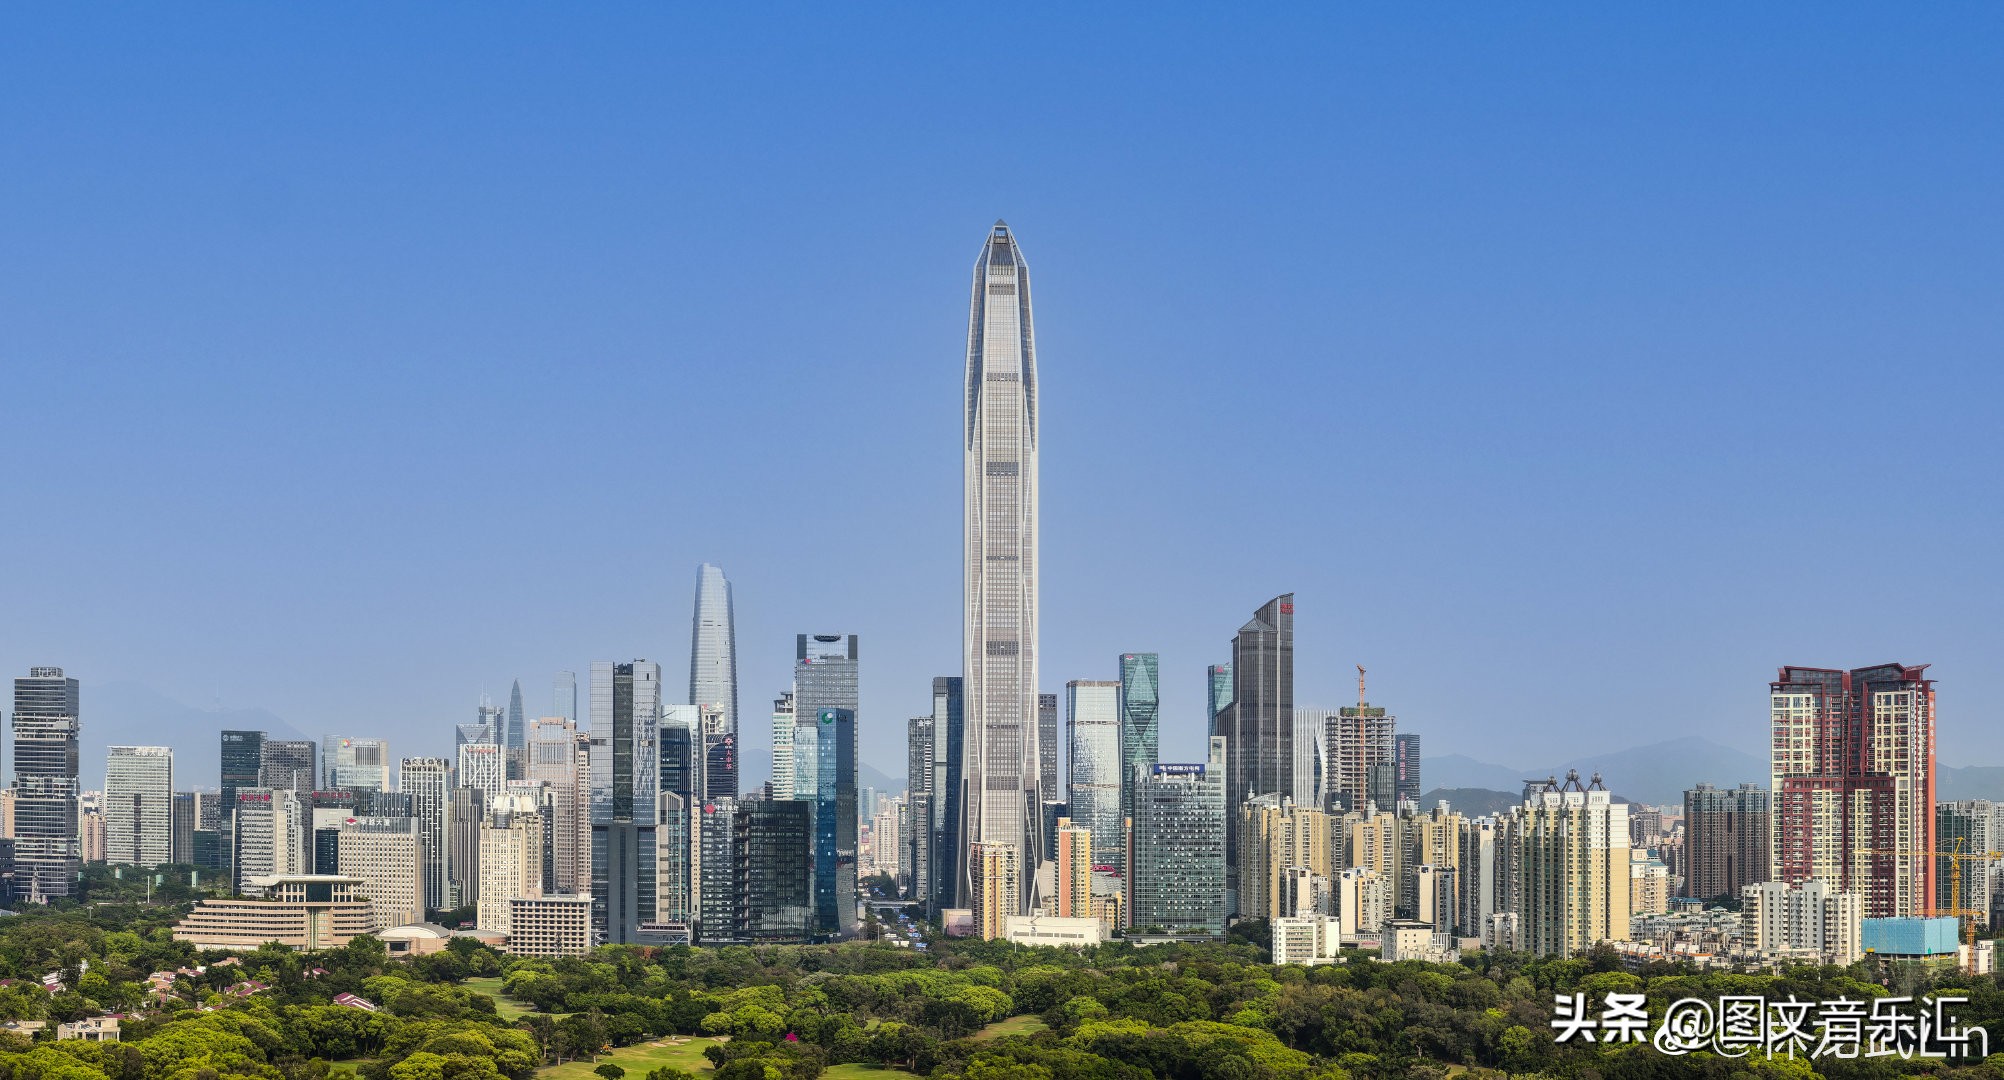 深圳200米以上摩天大楼160栋 世界第一 超过北上广三座超大城市之和